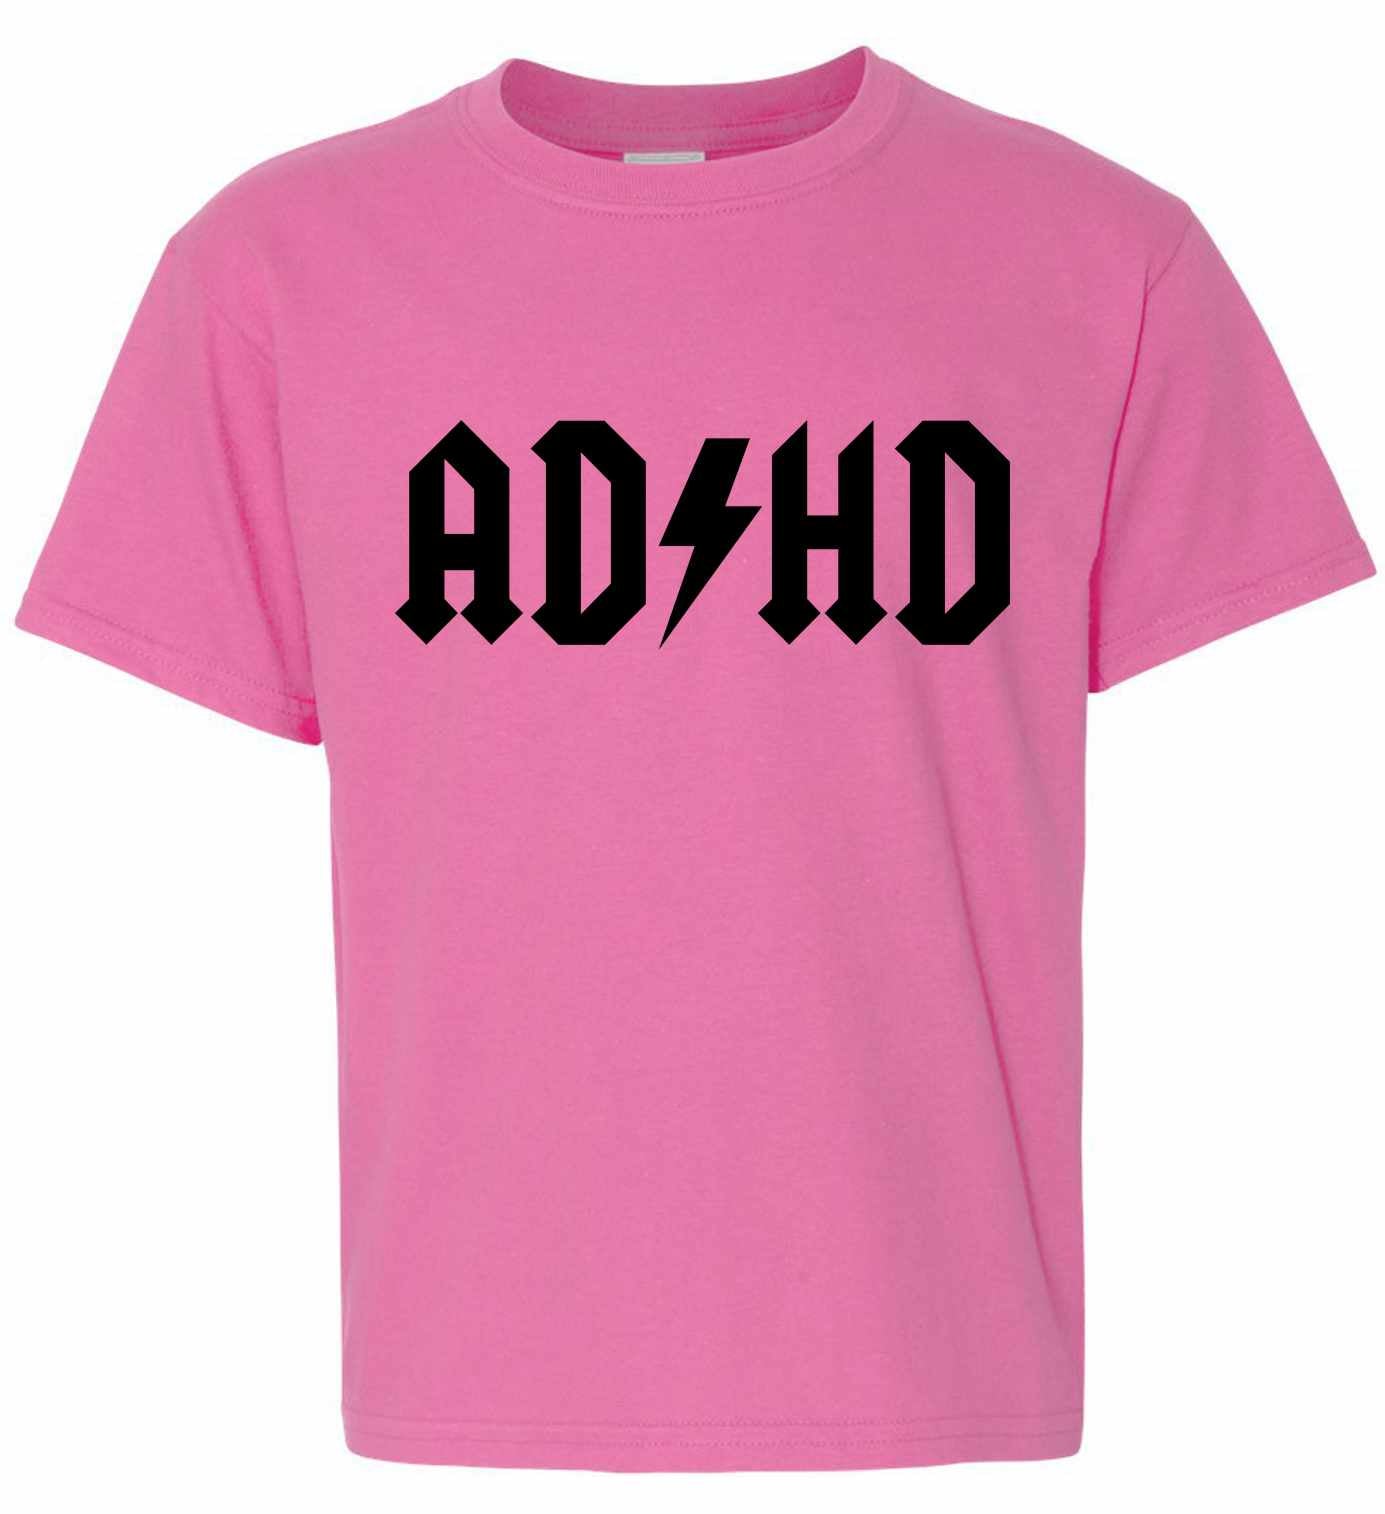 ADHD on Kids T-Shirt (#828-201)